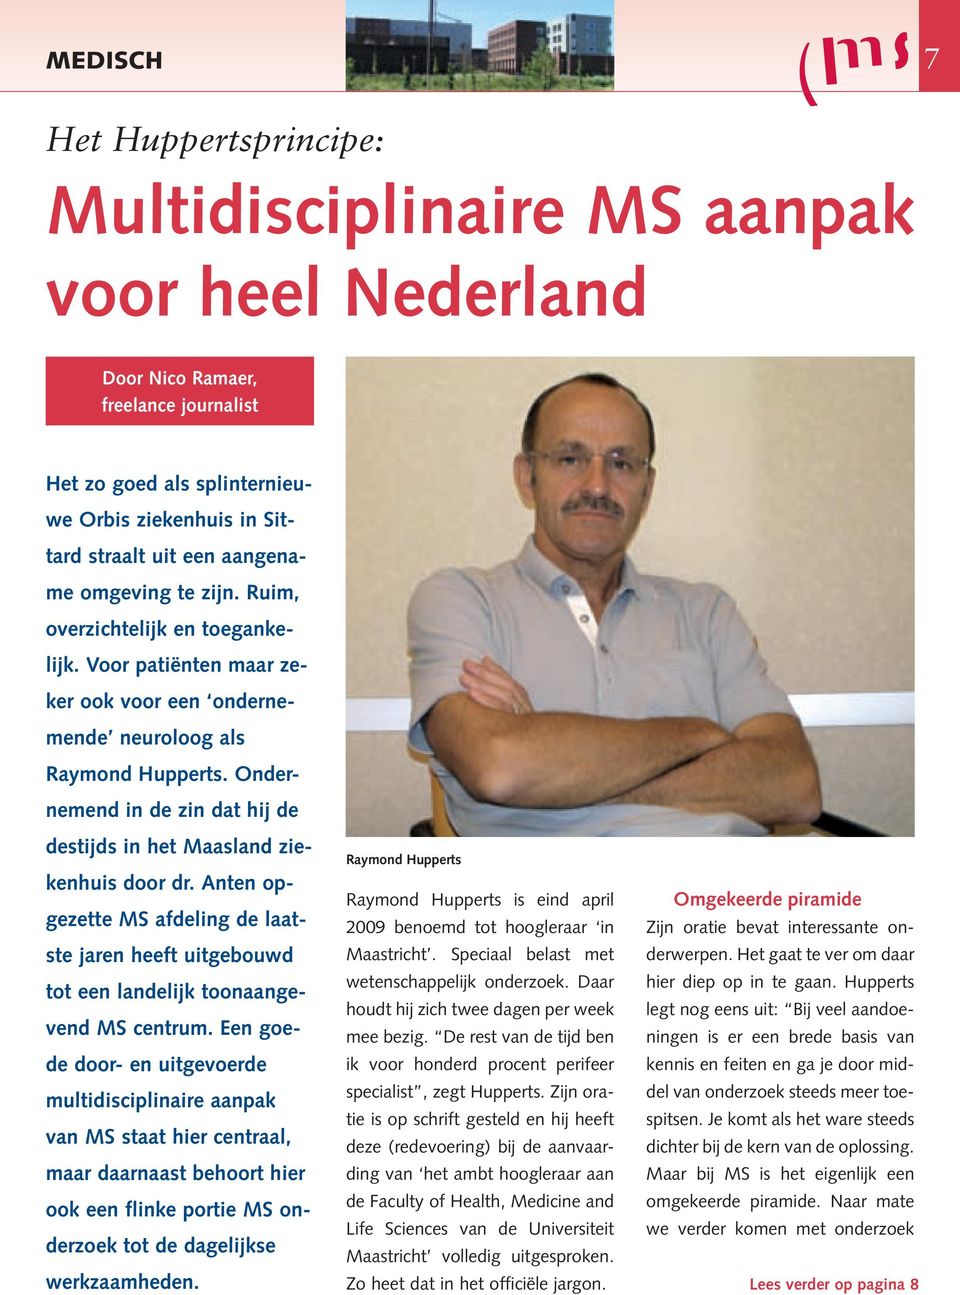 Ondernemend in de zin dat hij de destijds in het Maasland ziekenhuis door dr. Anten opgezette MS afdeling de laatste jaren heeft uitgebouwd tot een landelijk toonaangevend MS centrum.